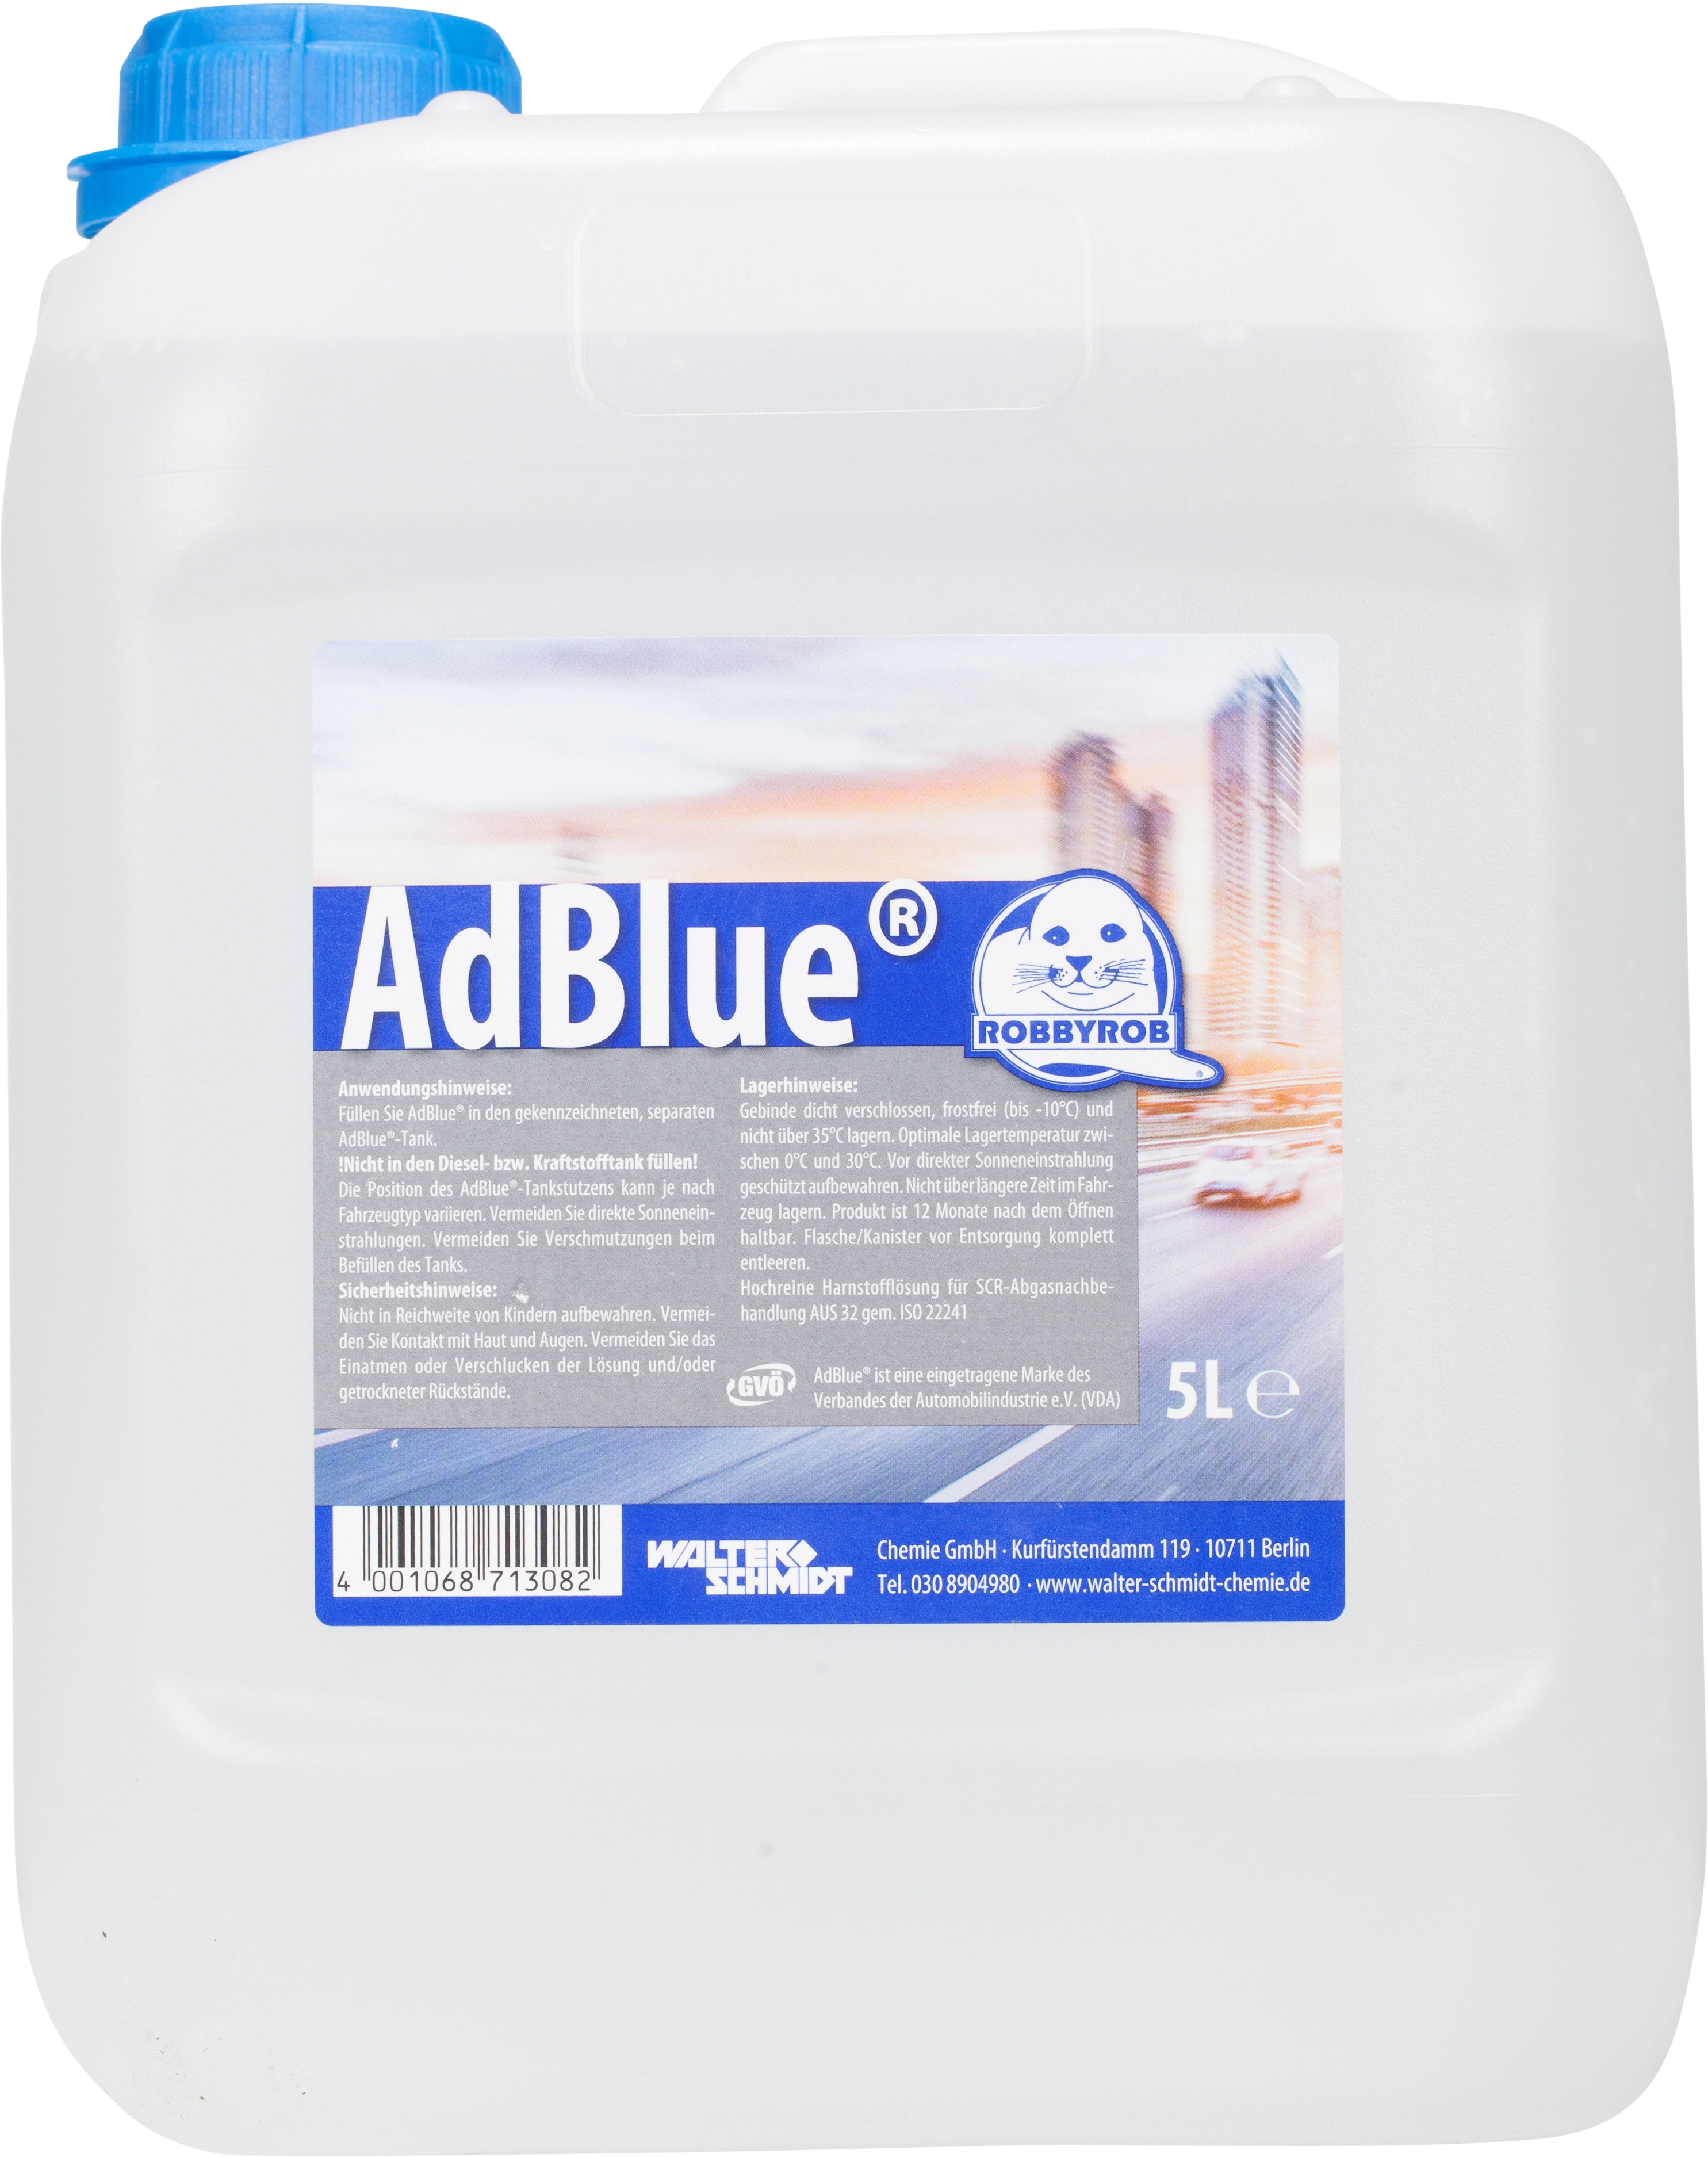 Adblue 10l Additiv für SCR-Tank, € 25,00